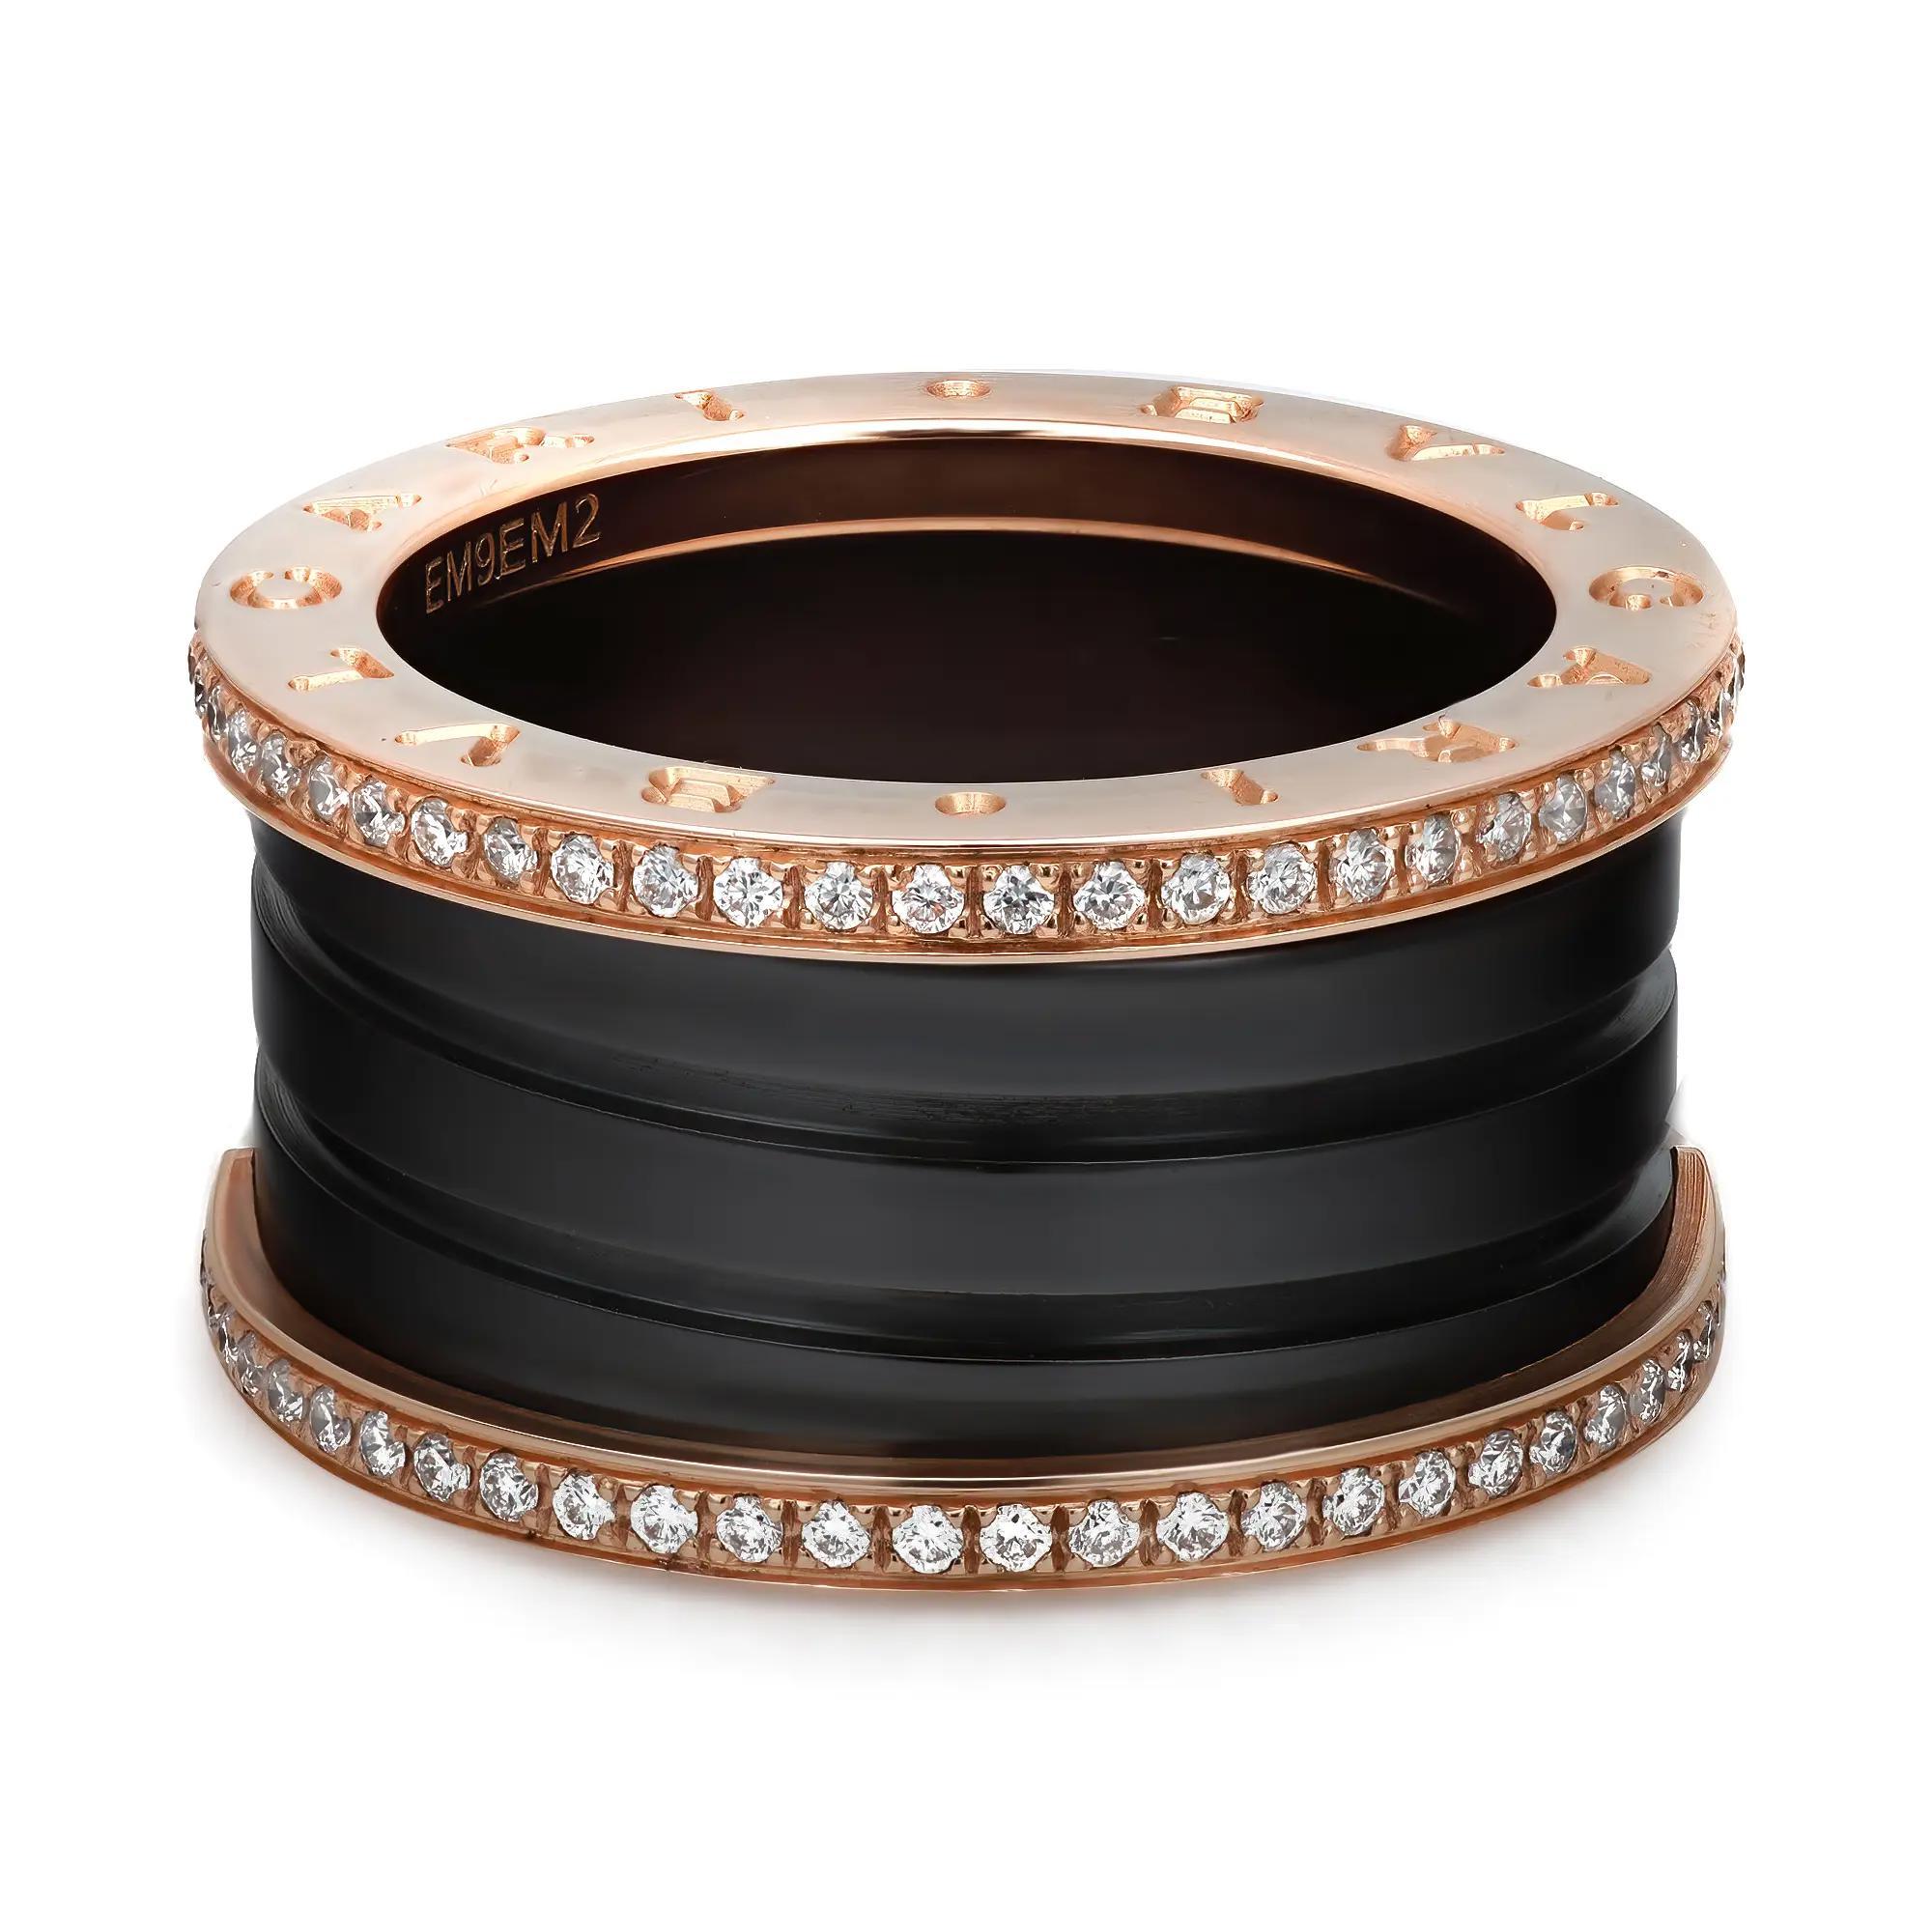 Dieser wunderschöne Ring aus der Bvlgari B.zero1 Kollektion mit vier Bändern ist aus glänzendem 18 Karat Roségold gefertigt. Er zeichnet sich durch einen unverwechselbaren Spiralring mit vier Bändern aus, der an den Rändern mit runden Diamanten im